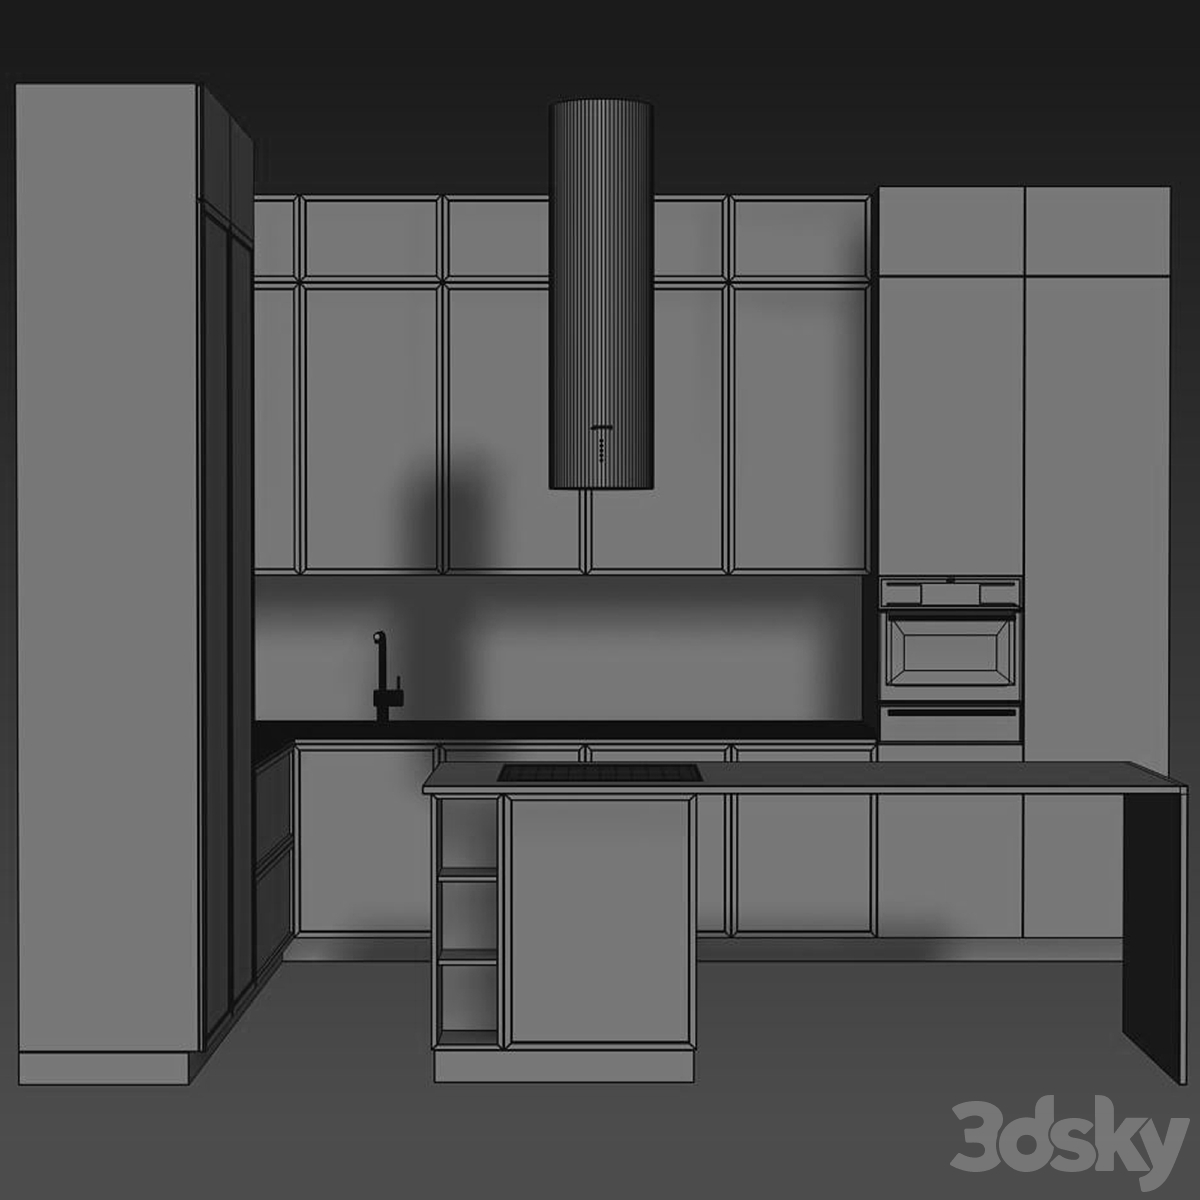 Kitchen 012 420x300x300H